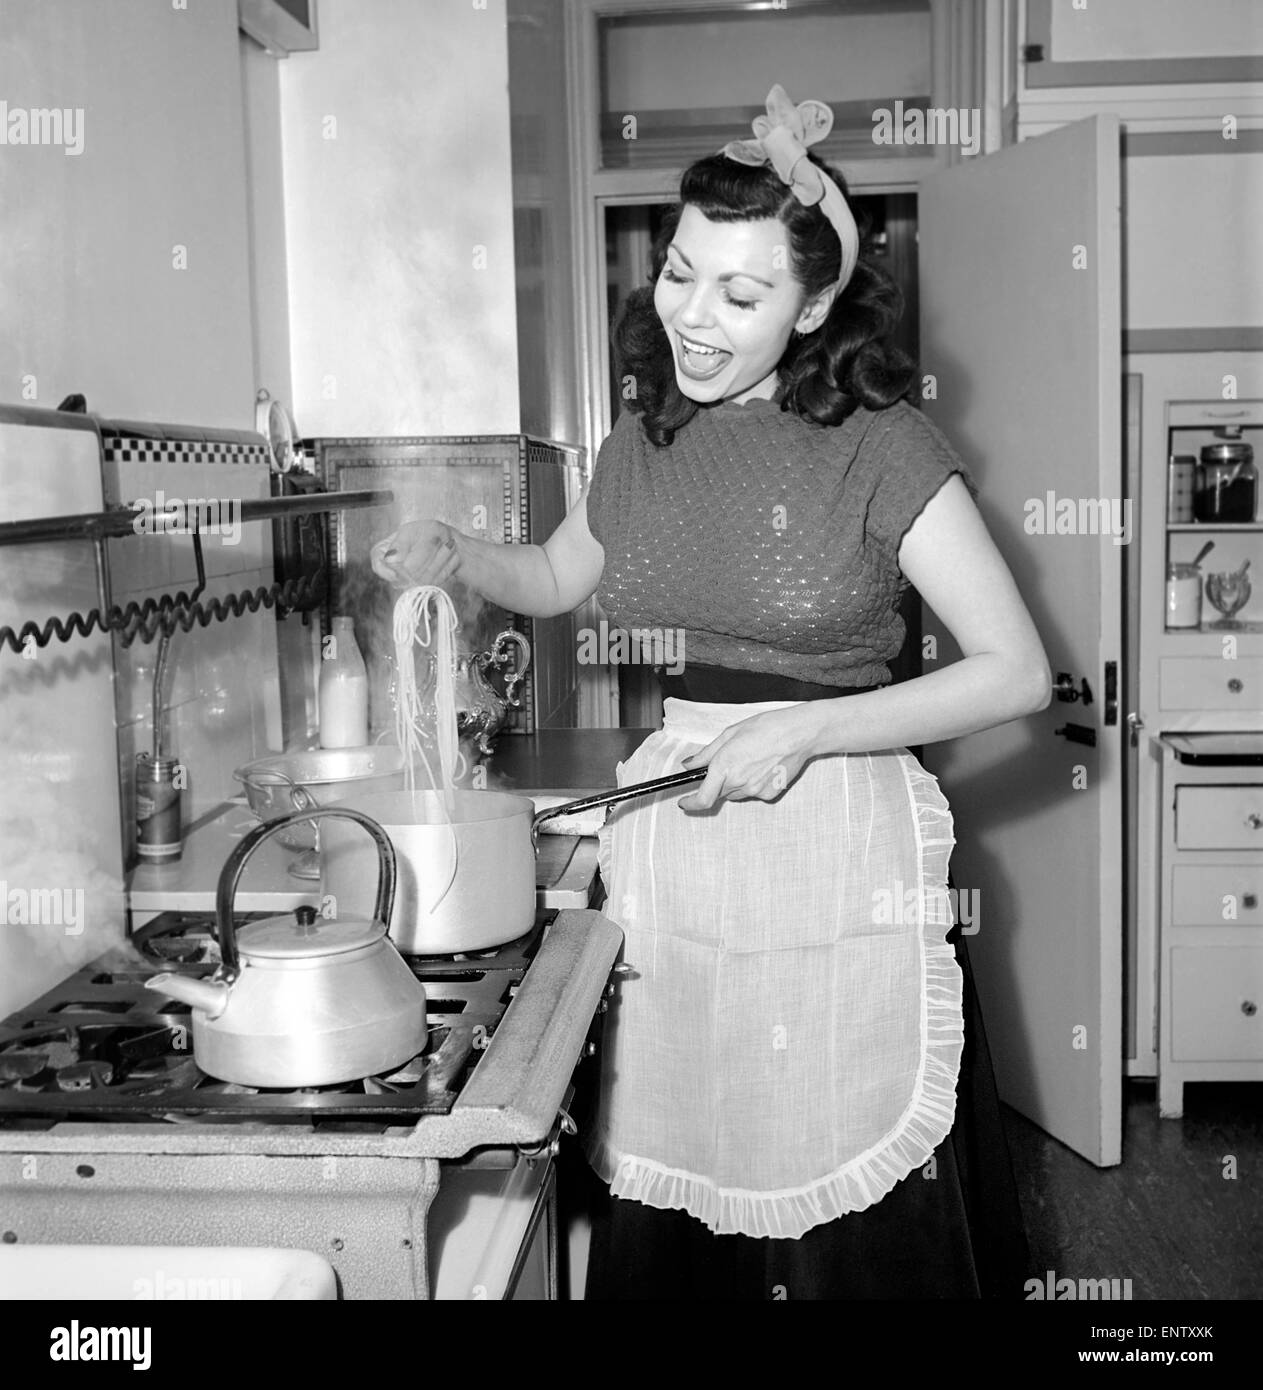 Eine Hausfrau Kochen Spaghetti in der Küche, 1957 Stockfotografie - Alamy